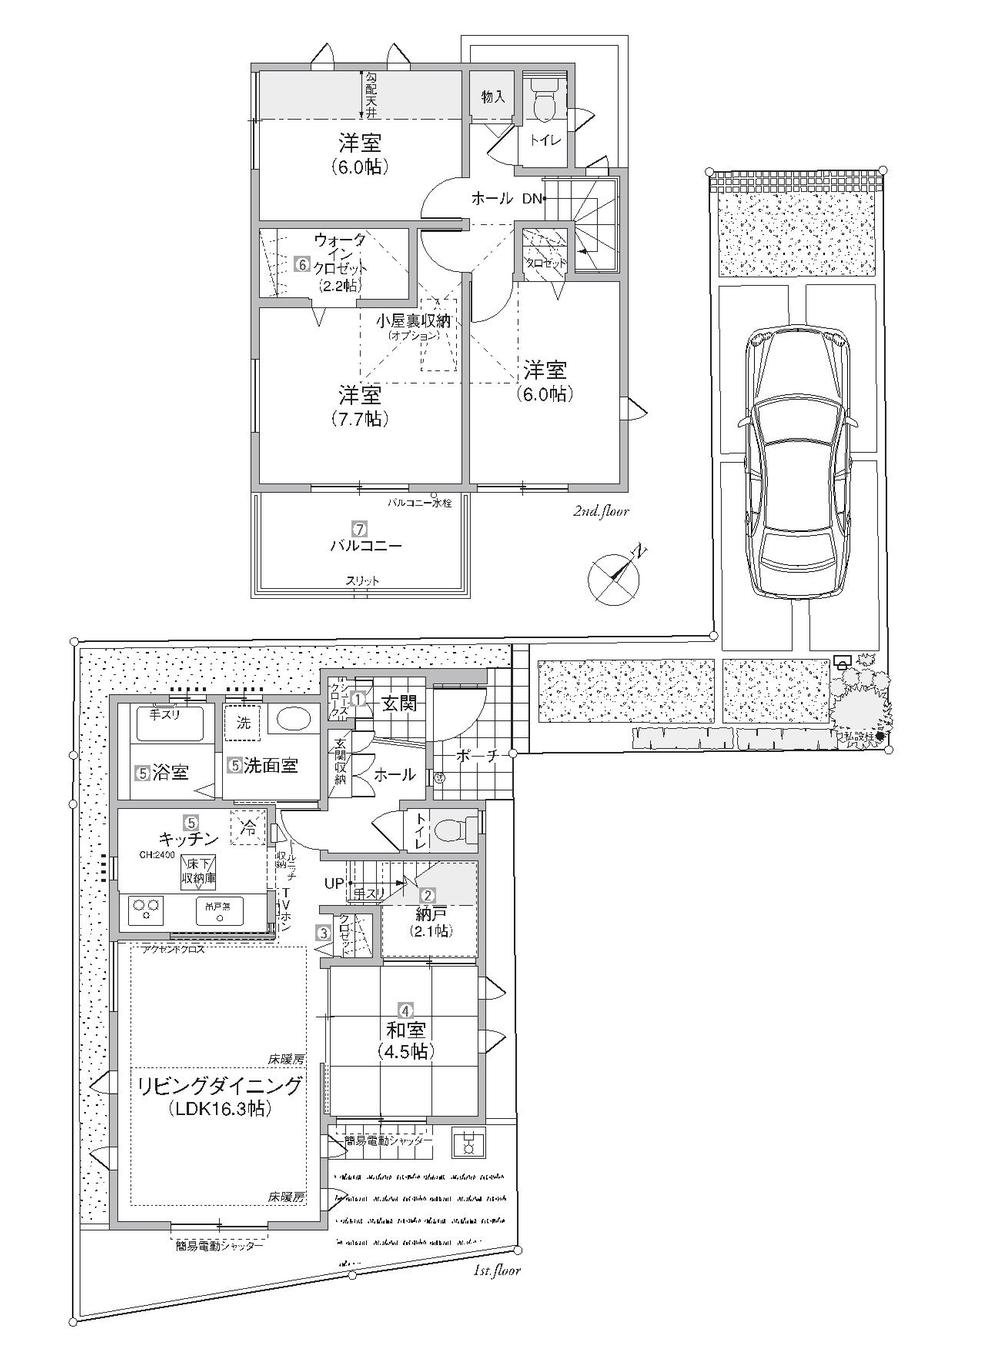 Floor plan. 29,900,000 yen, 4LDK + S (storeroom), Land area 122.2 sq m , Building area 96.88 sq m